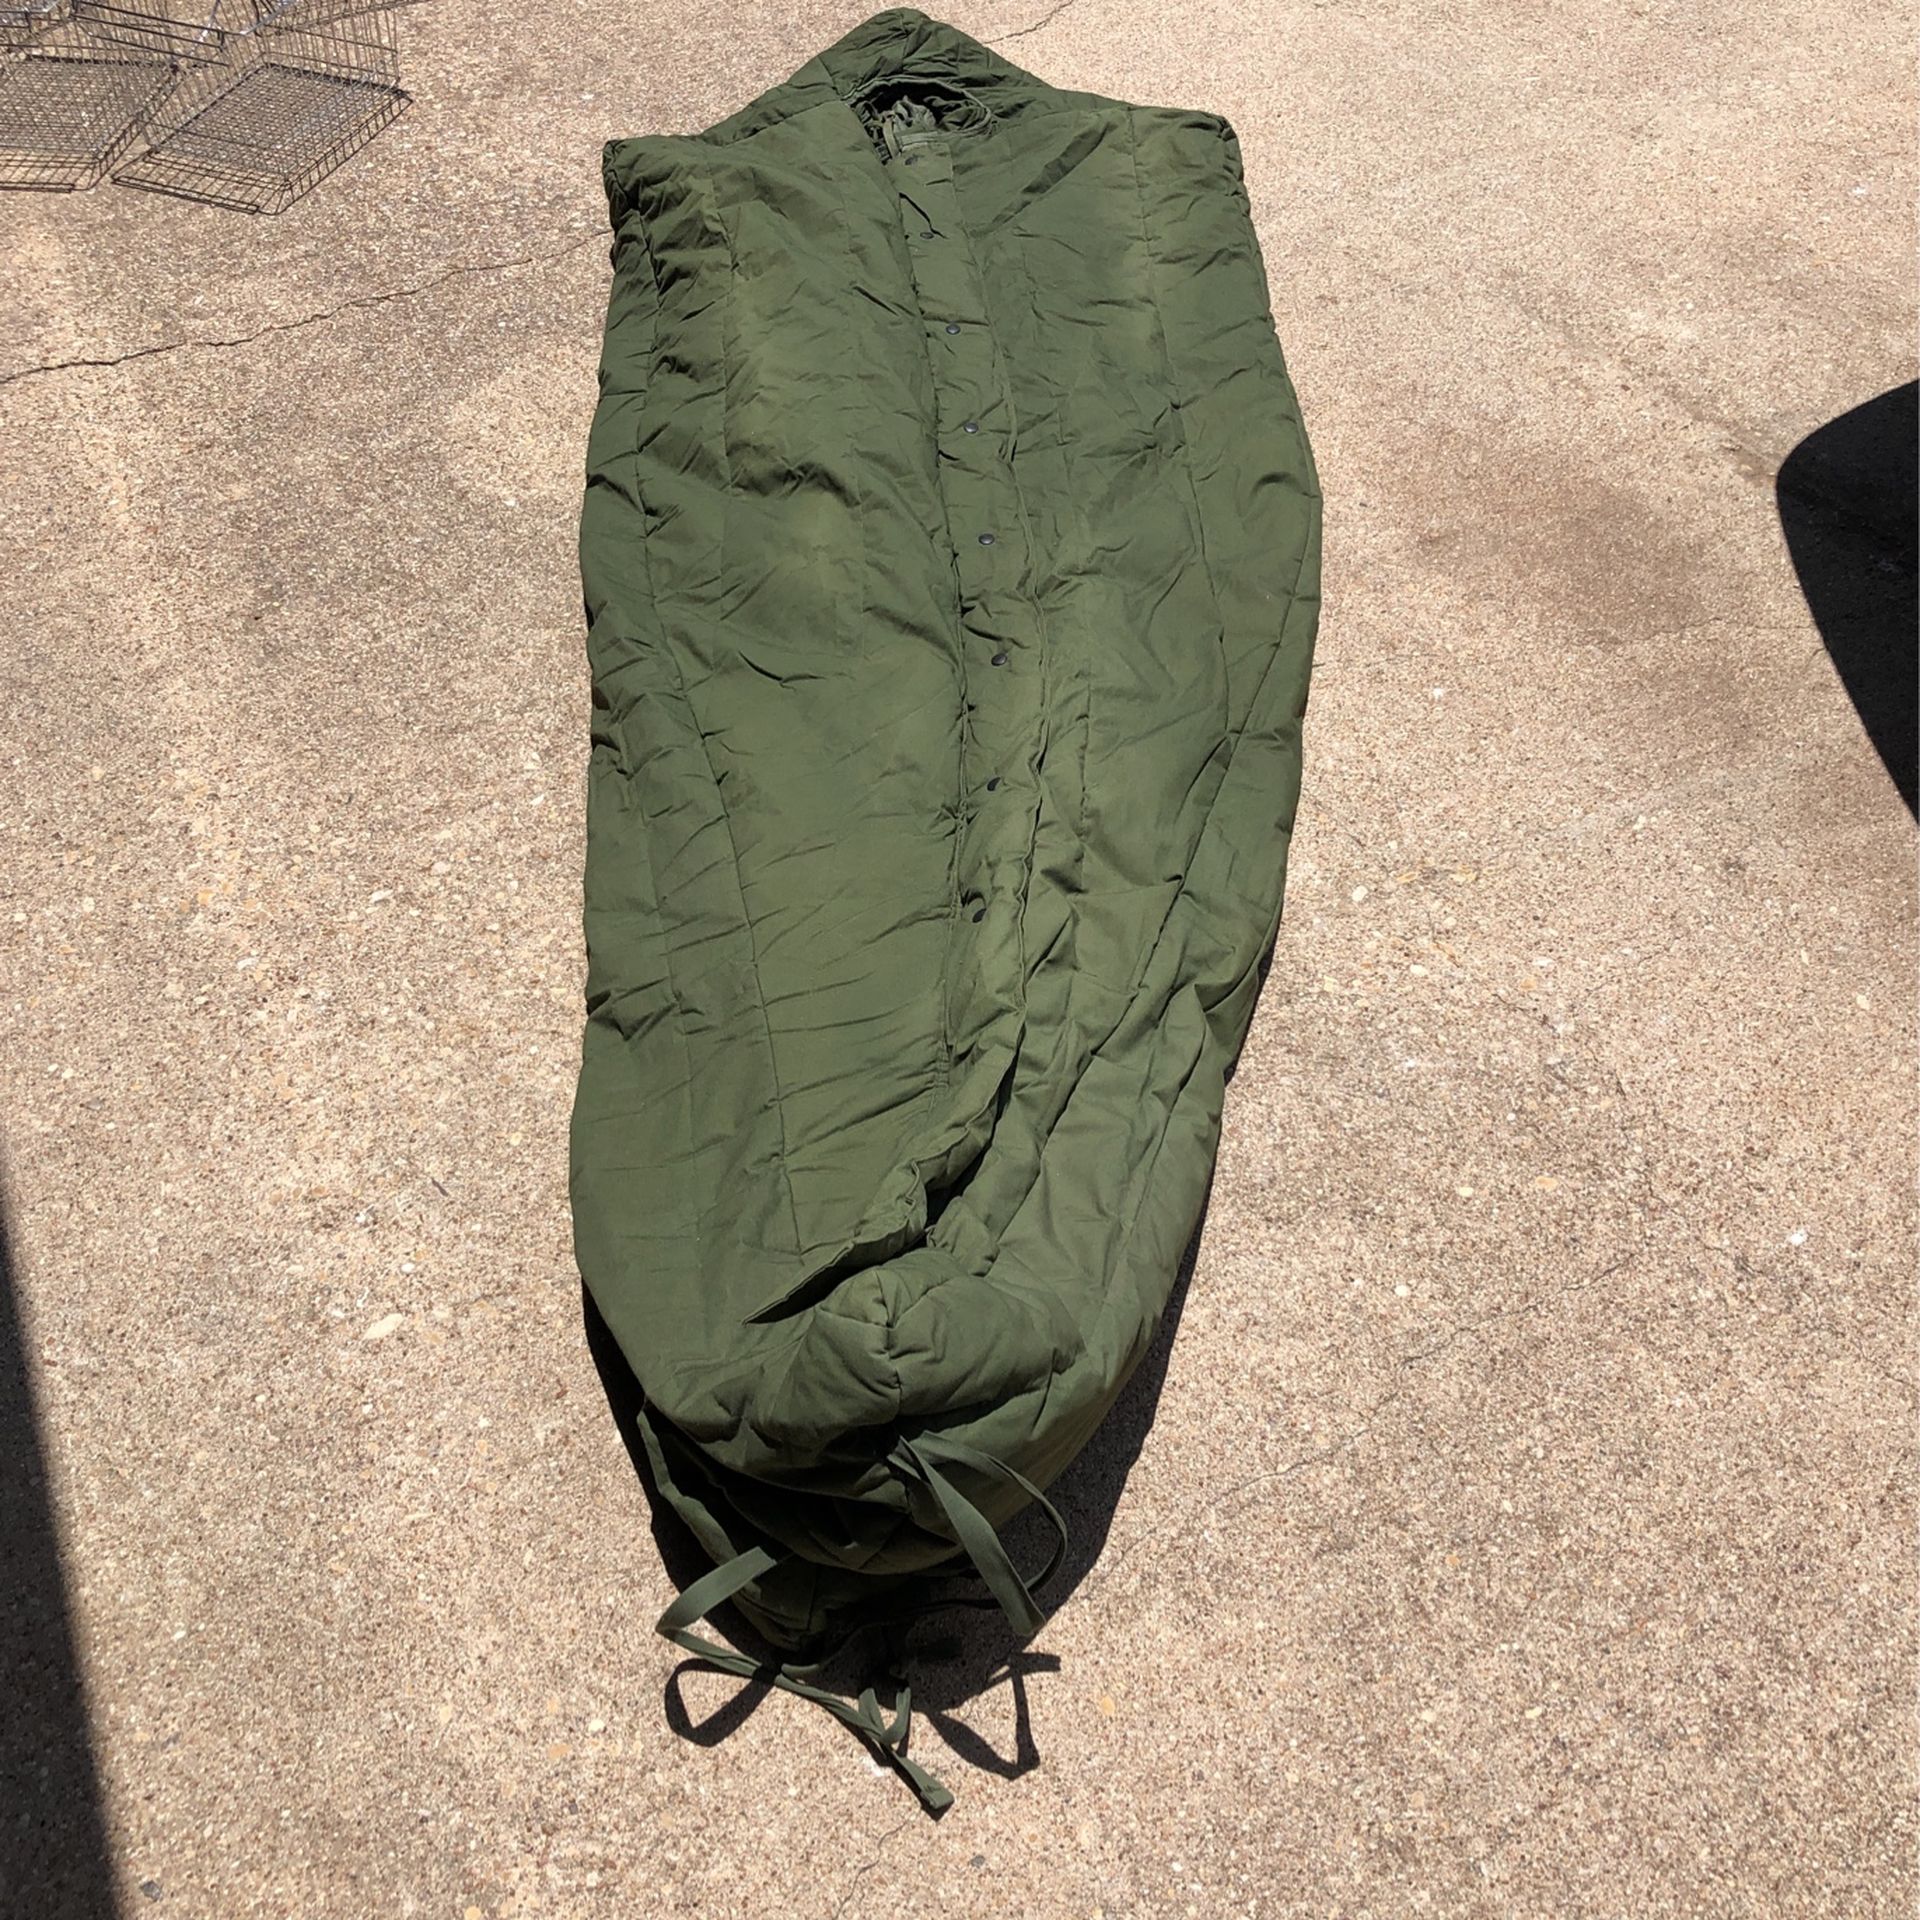 Military Sleeping Bag